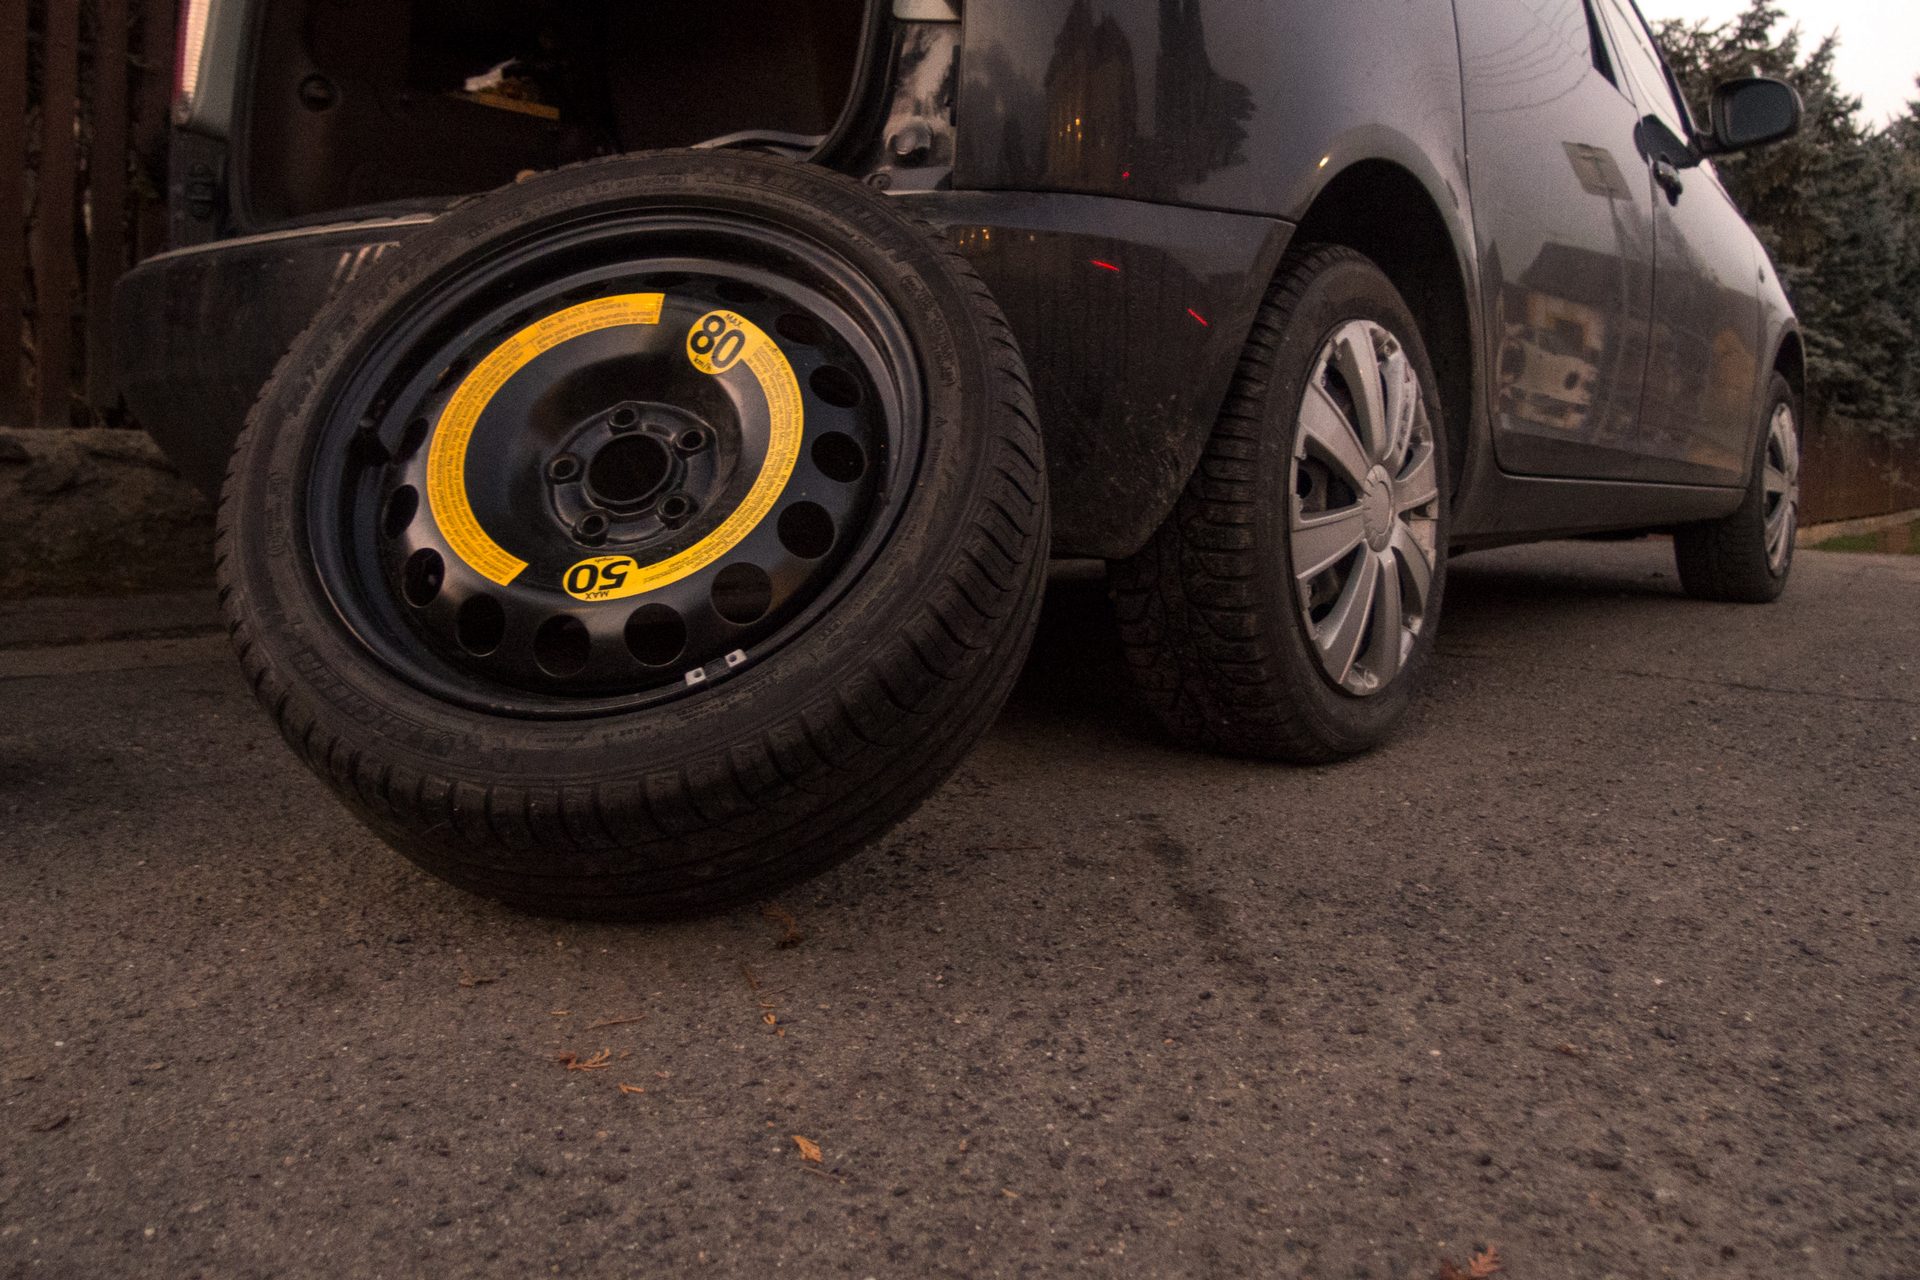 fix punctured tire